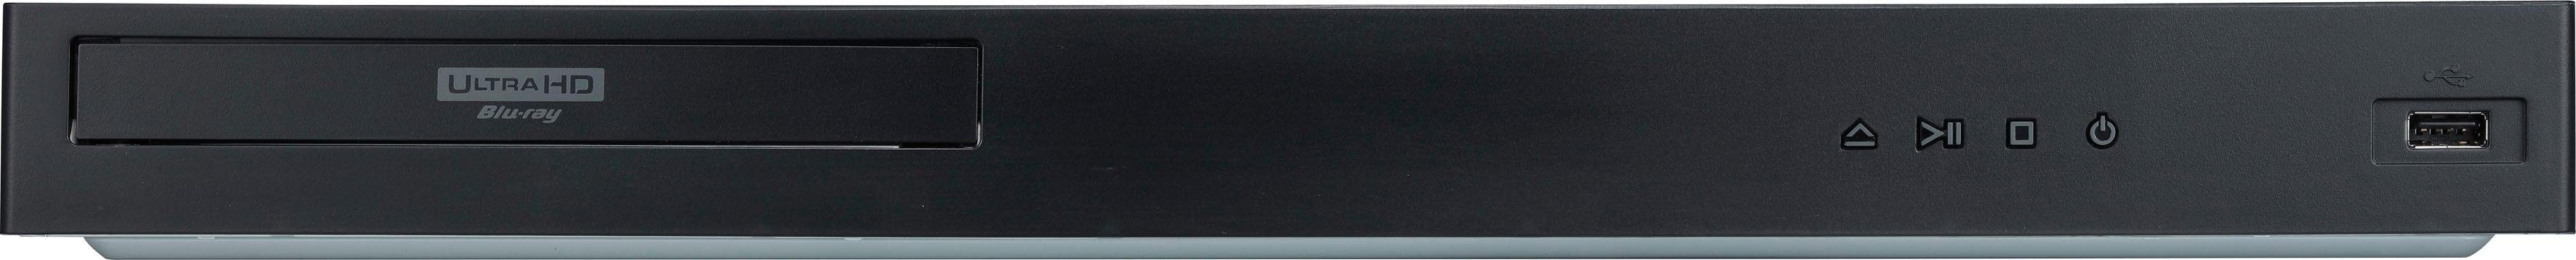 LG UBK90 Blu-ray-Player (4k Ultra WLAN, HD, 4K Upscaling)